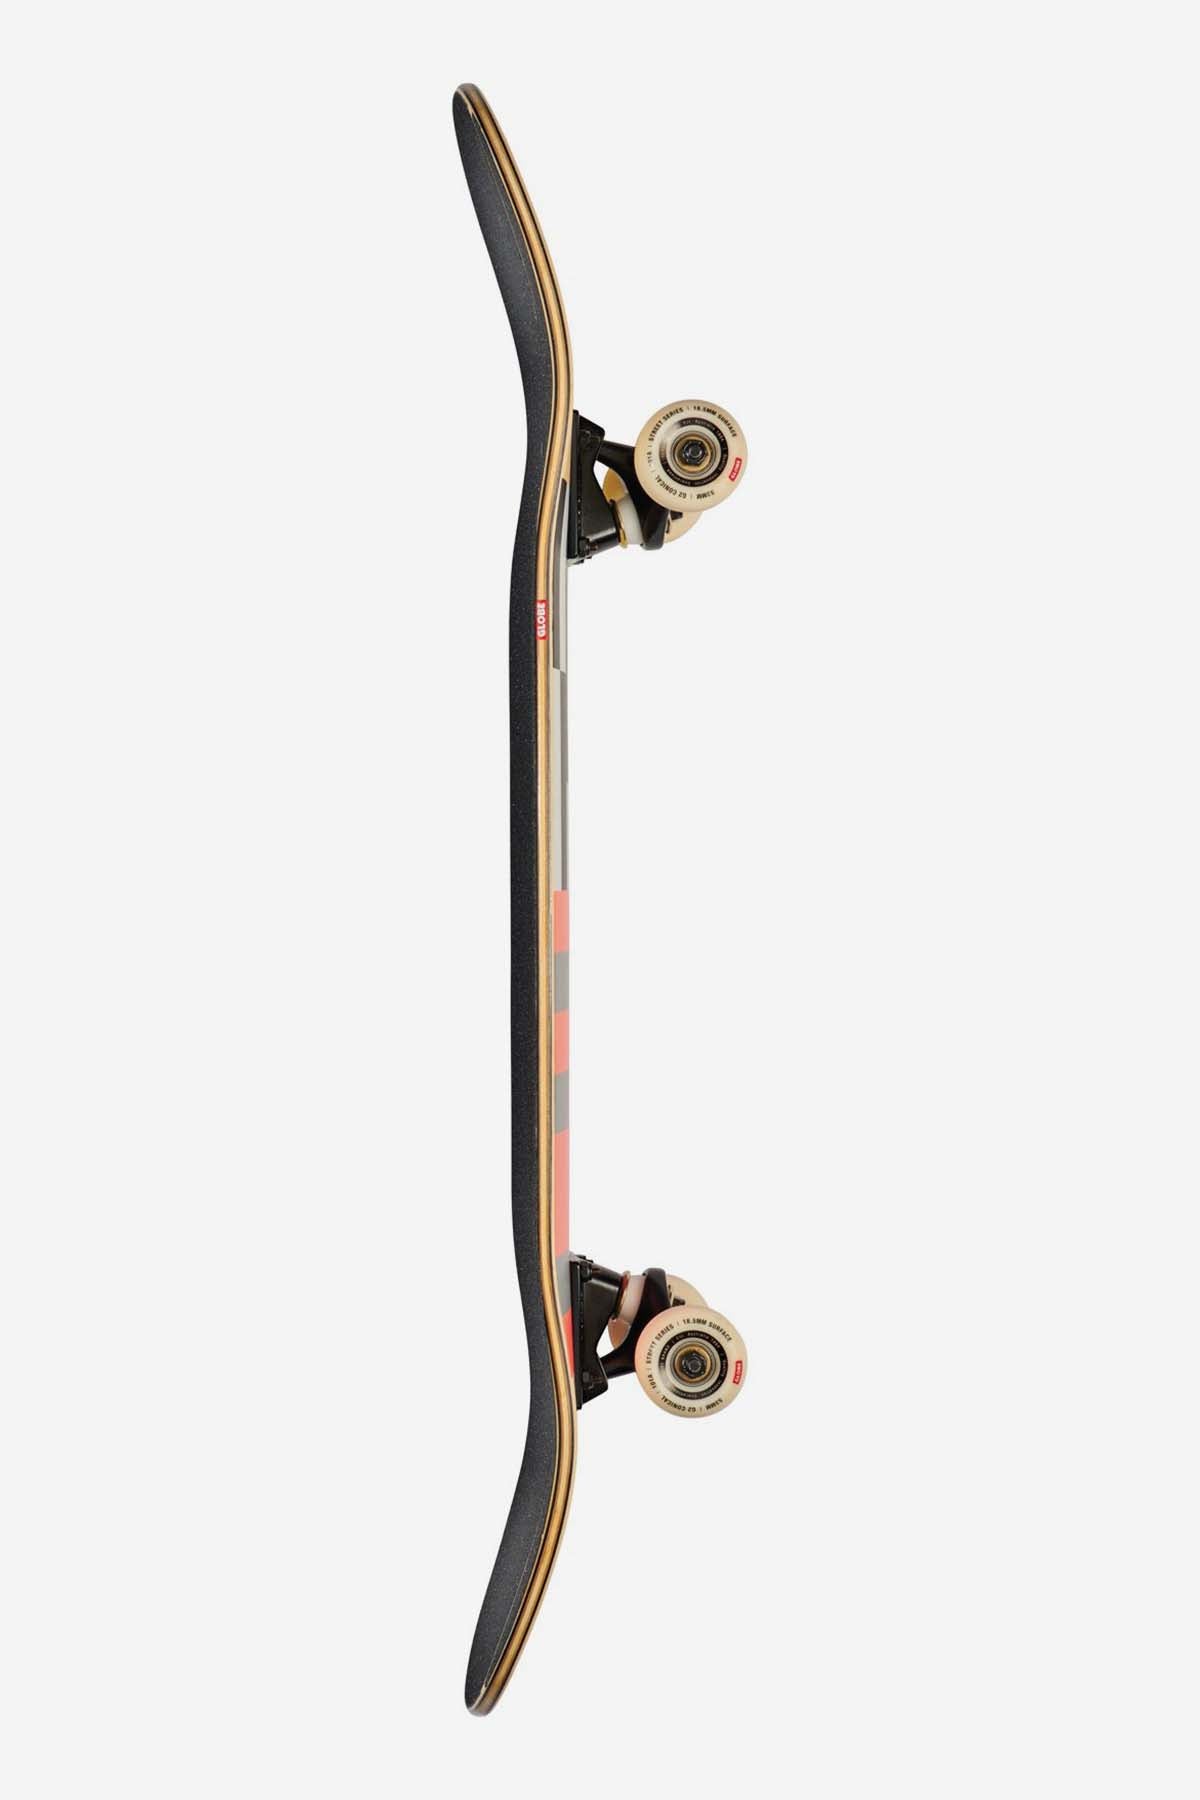 G3 Check, Please - Bambus/Turbo - 8.375" Komplett Skateboard